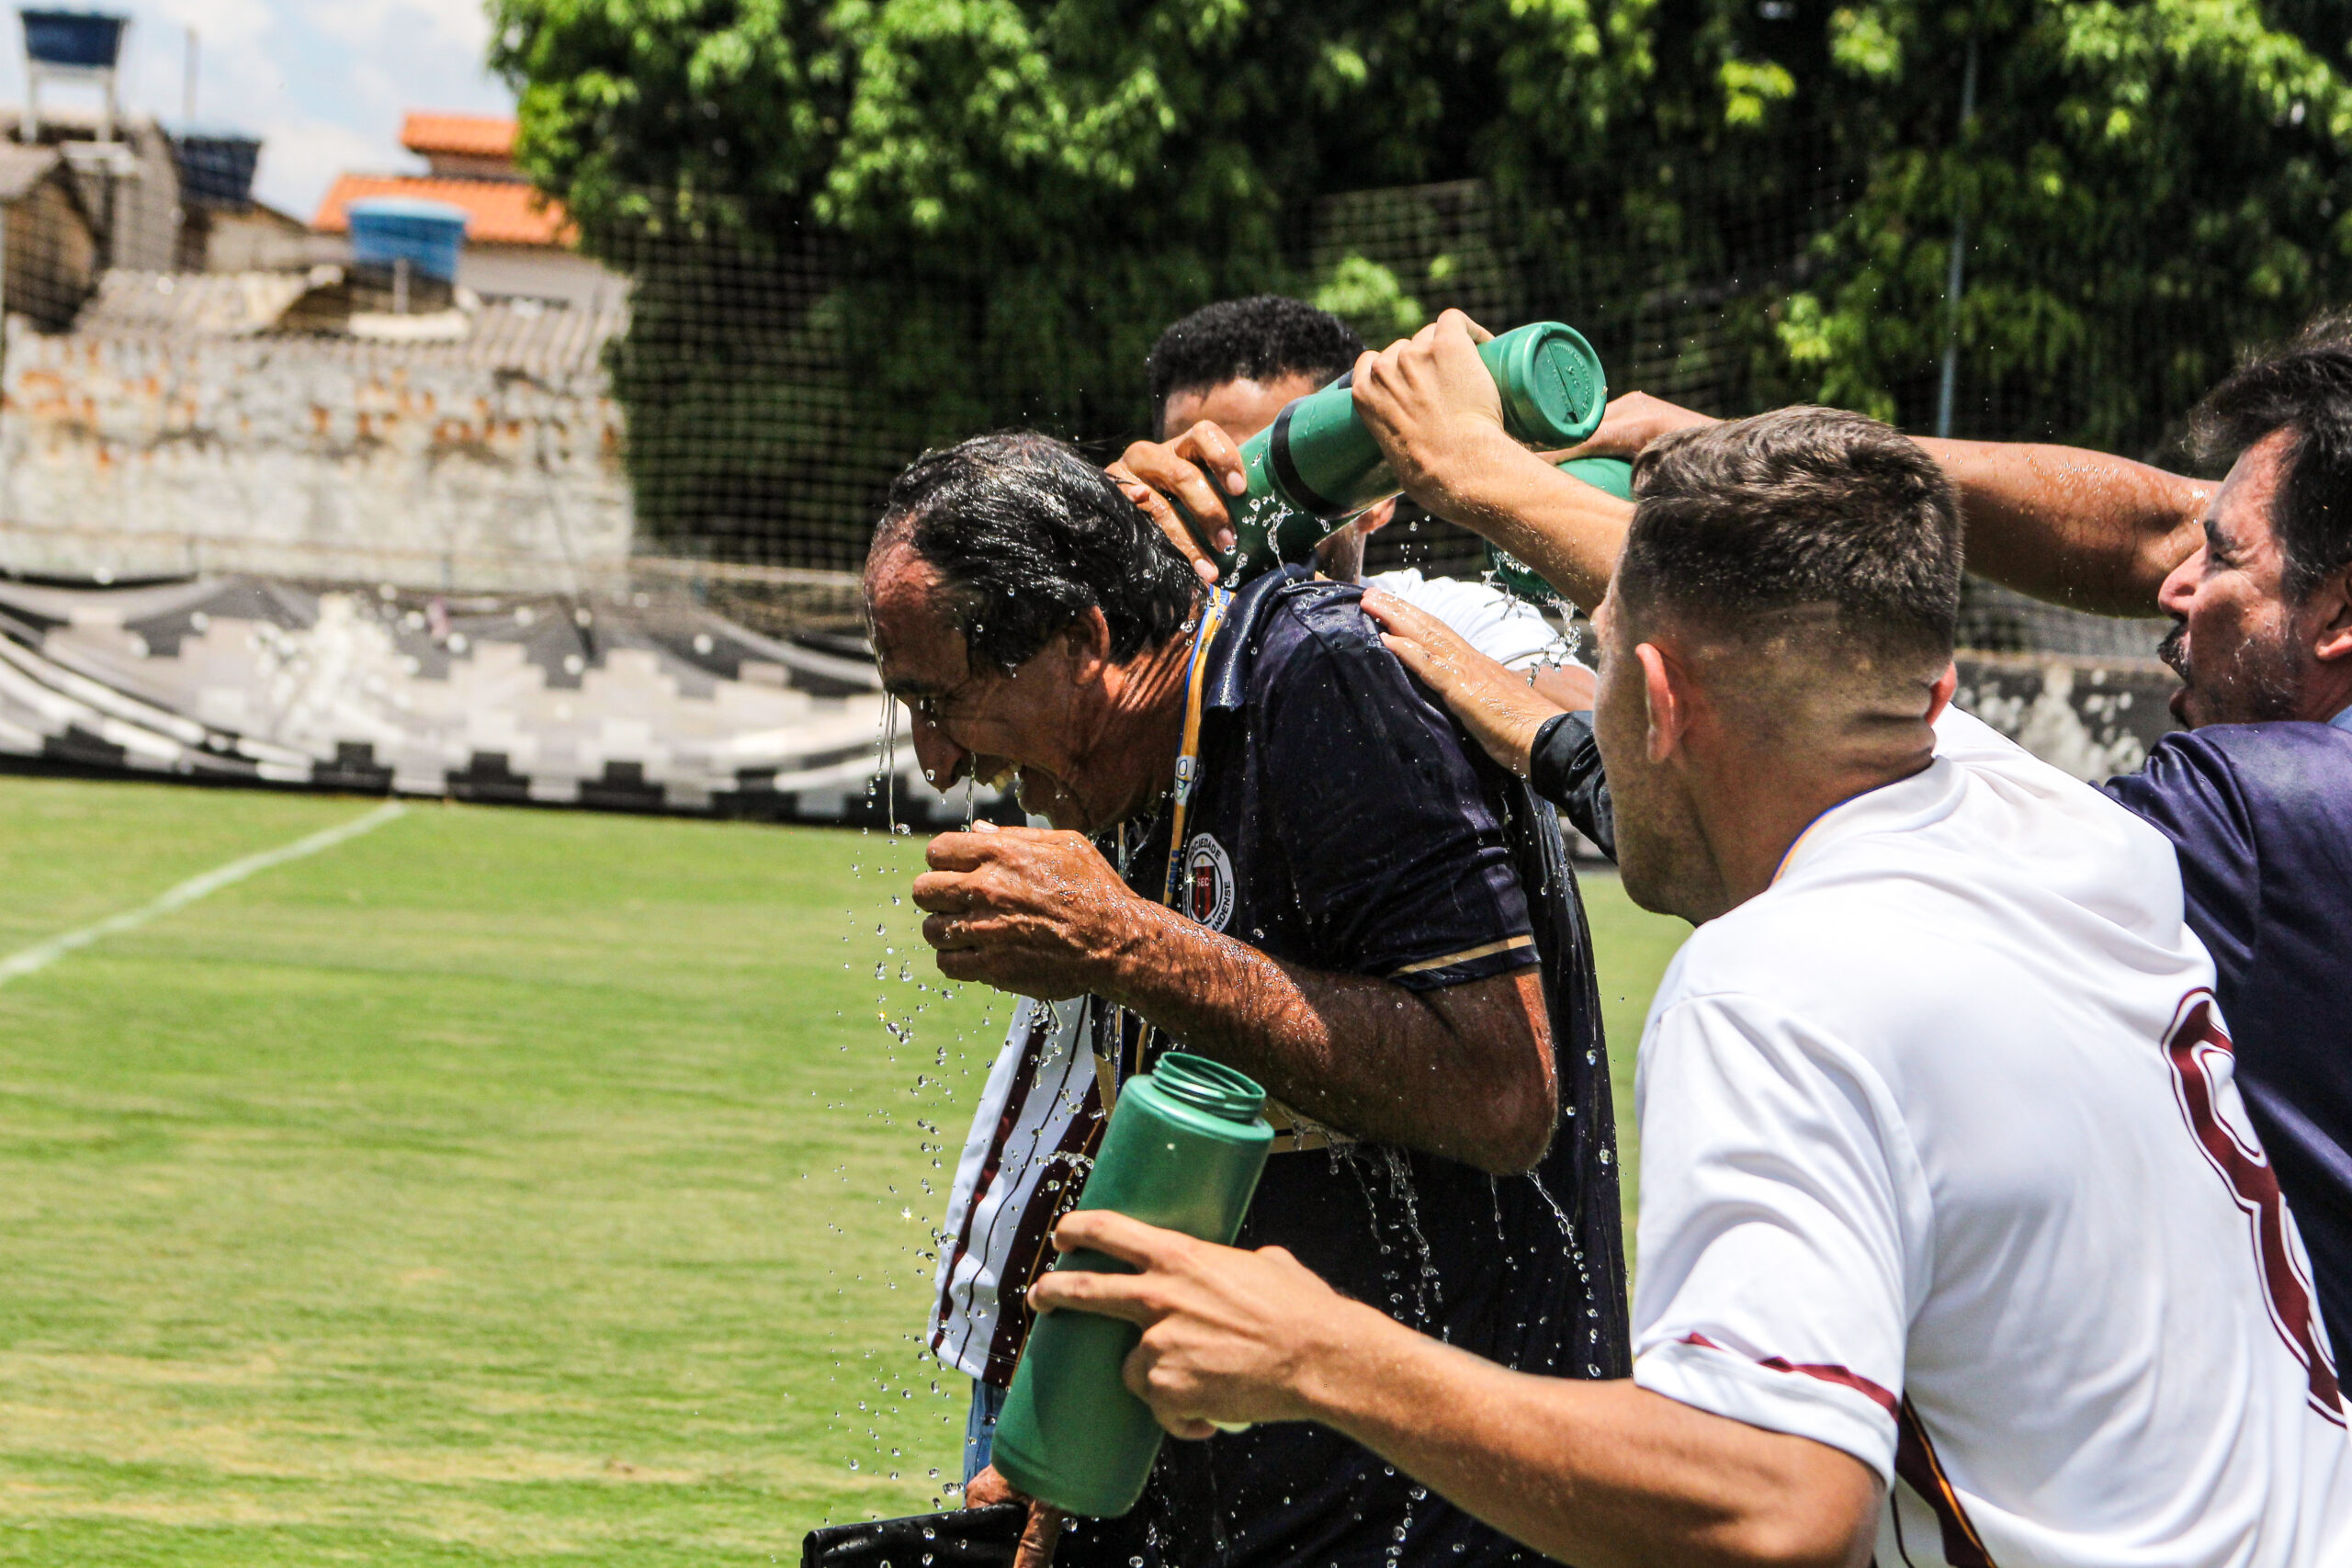 Luis dos Reis tomando banho dos atletas do Ceilandense após a conquista da Segunda Divisão do Campeonato Candango - Segundinha